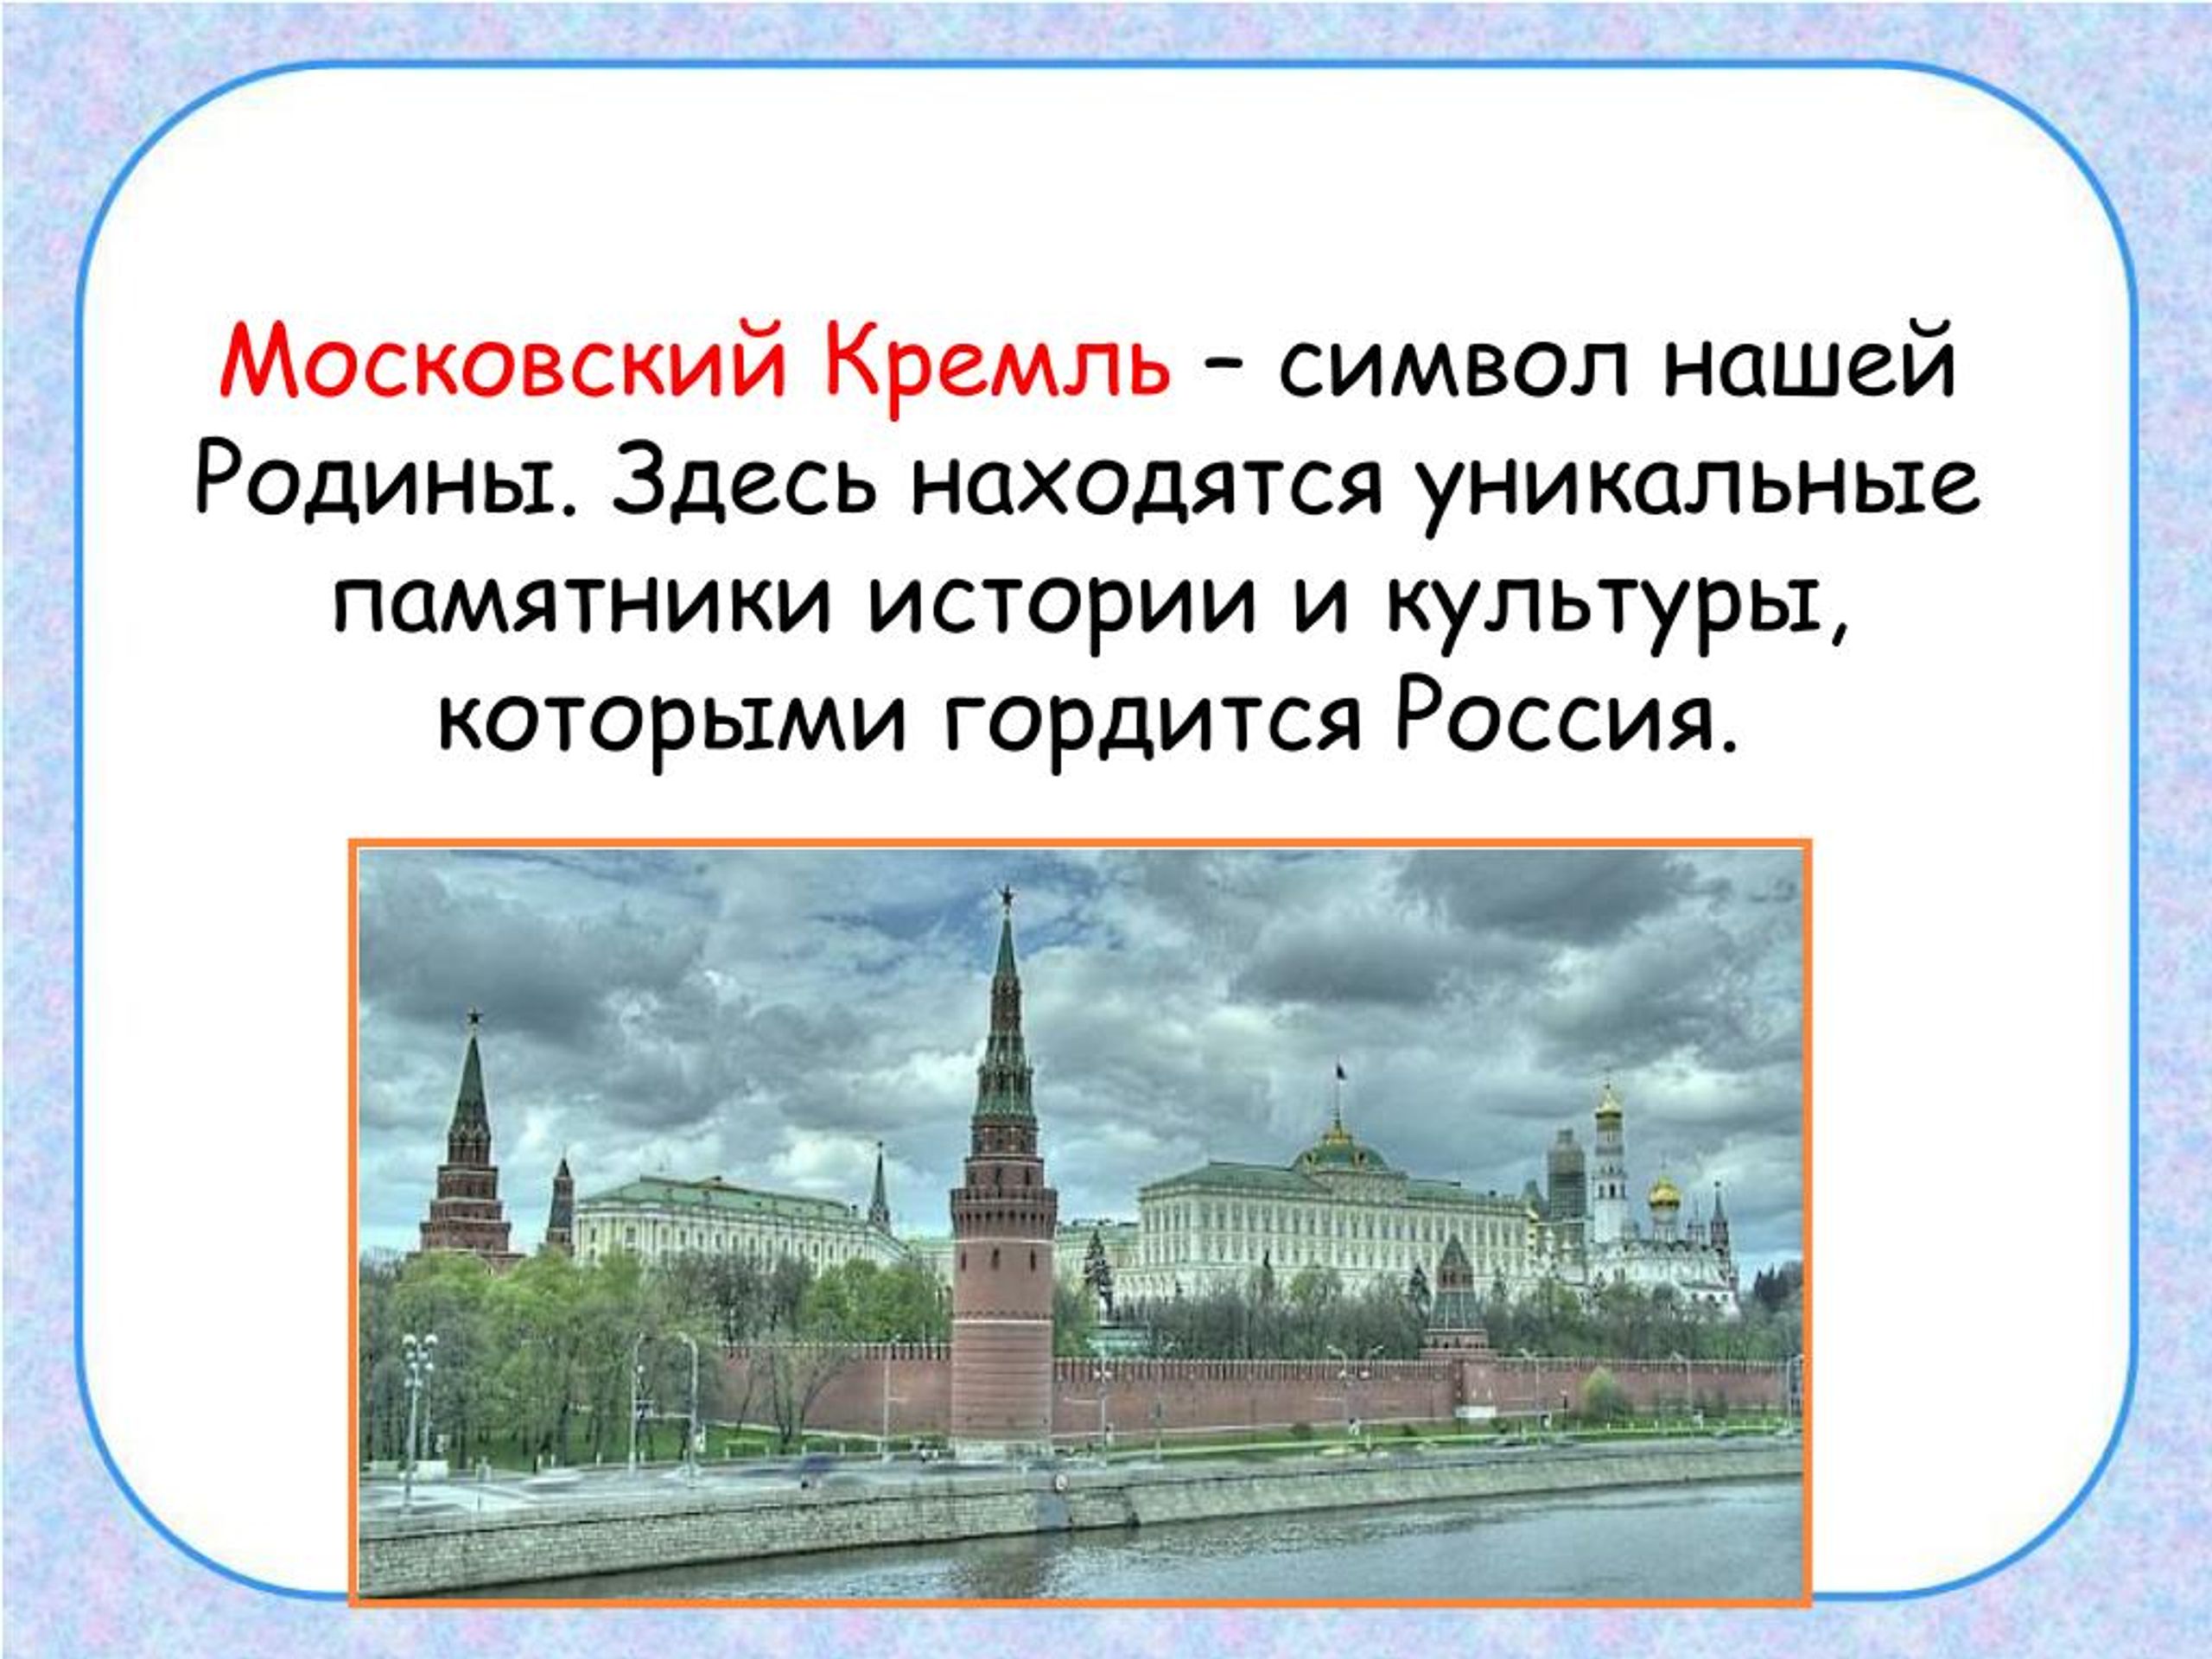 Почему московский кремль является. Московский Кремль символ нашей Родины. Почему Кремль символ России. Почему Кремль символ нашей Родины. Почему Московский Кремль является символом нашей Родины.